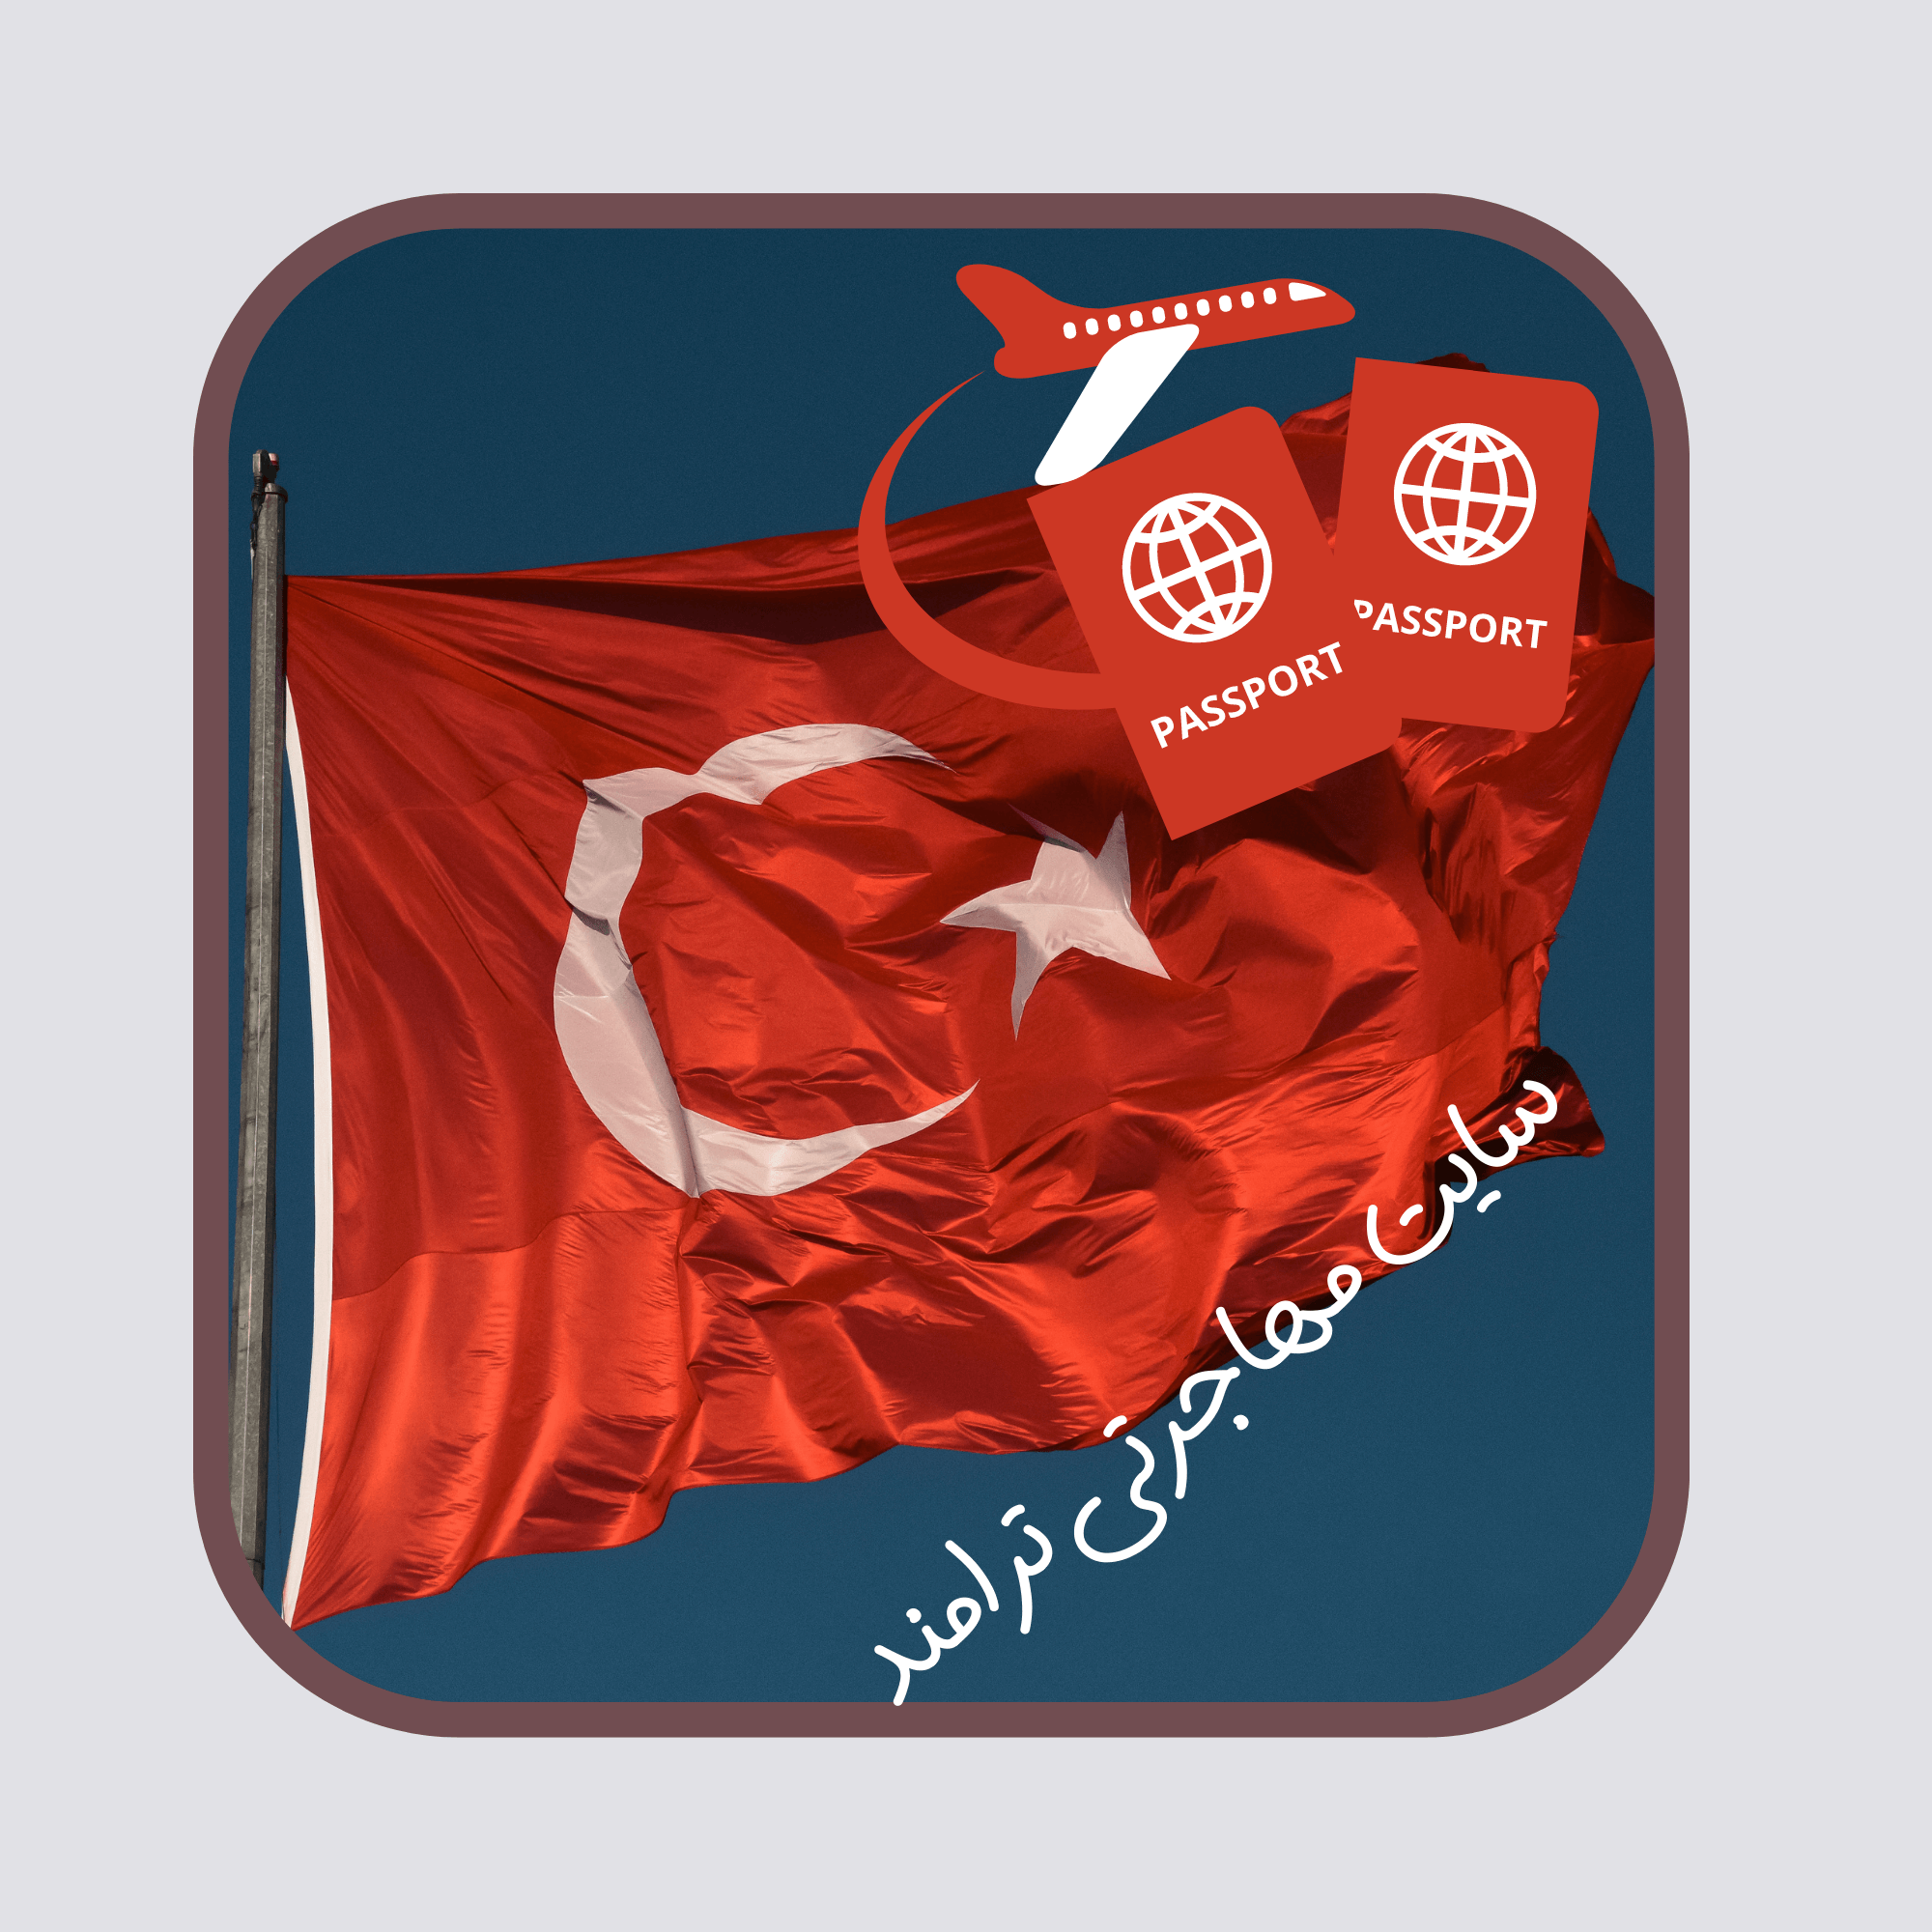 مزایا و شرایط دریافت پاسپورت ترکیه